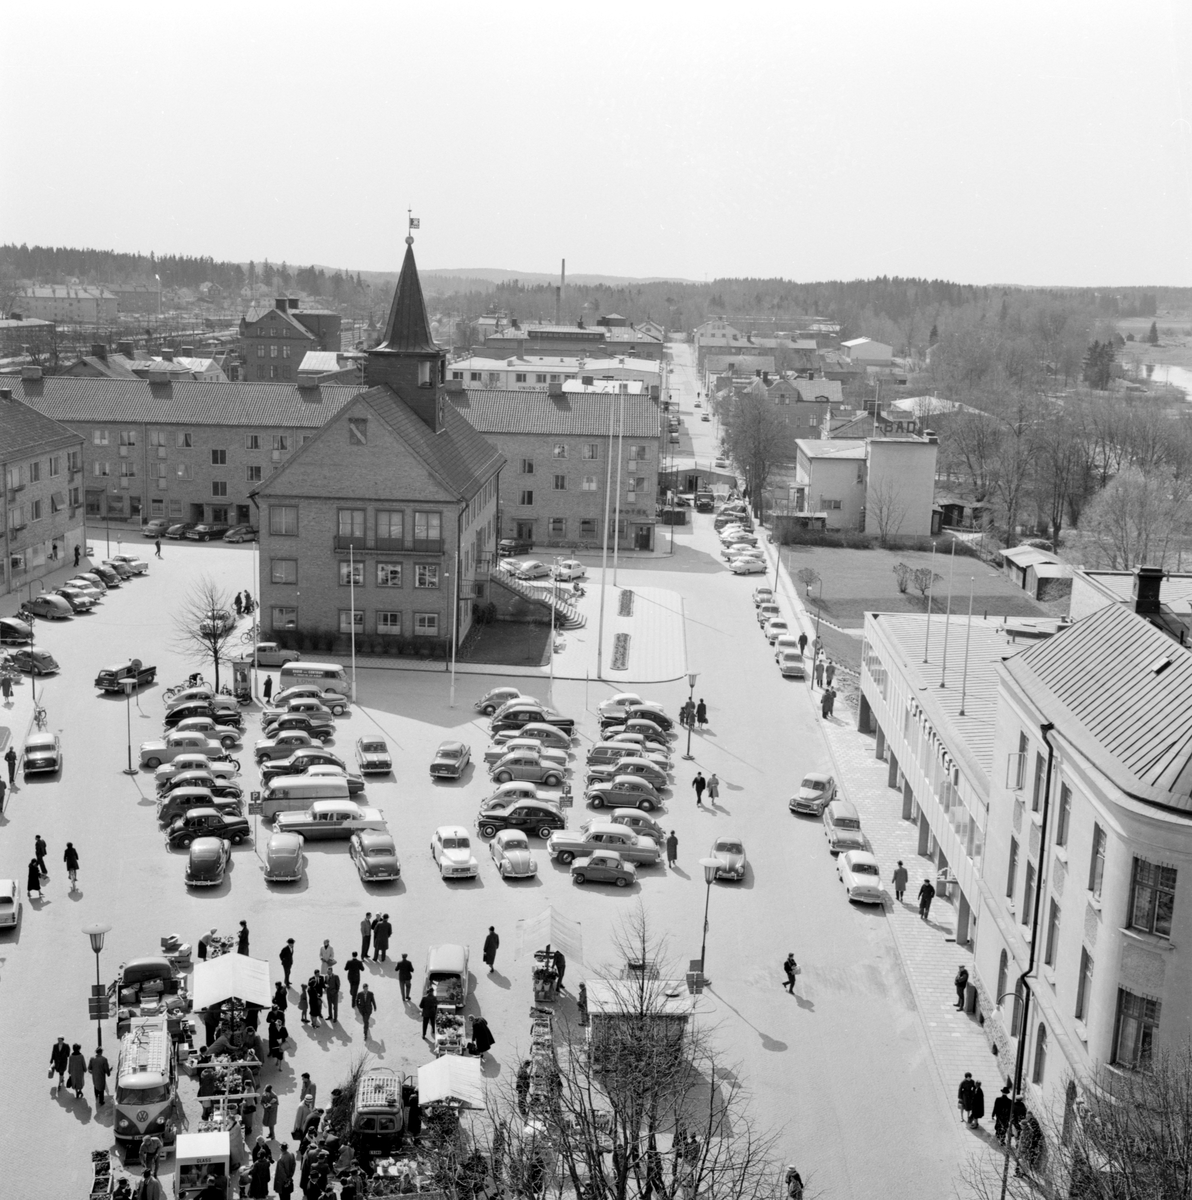 Fotografen Arne Gustafsson har tagit posto i kyrktornet för den här vyn över Stora torget i Mjölby. Året är 1961.